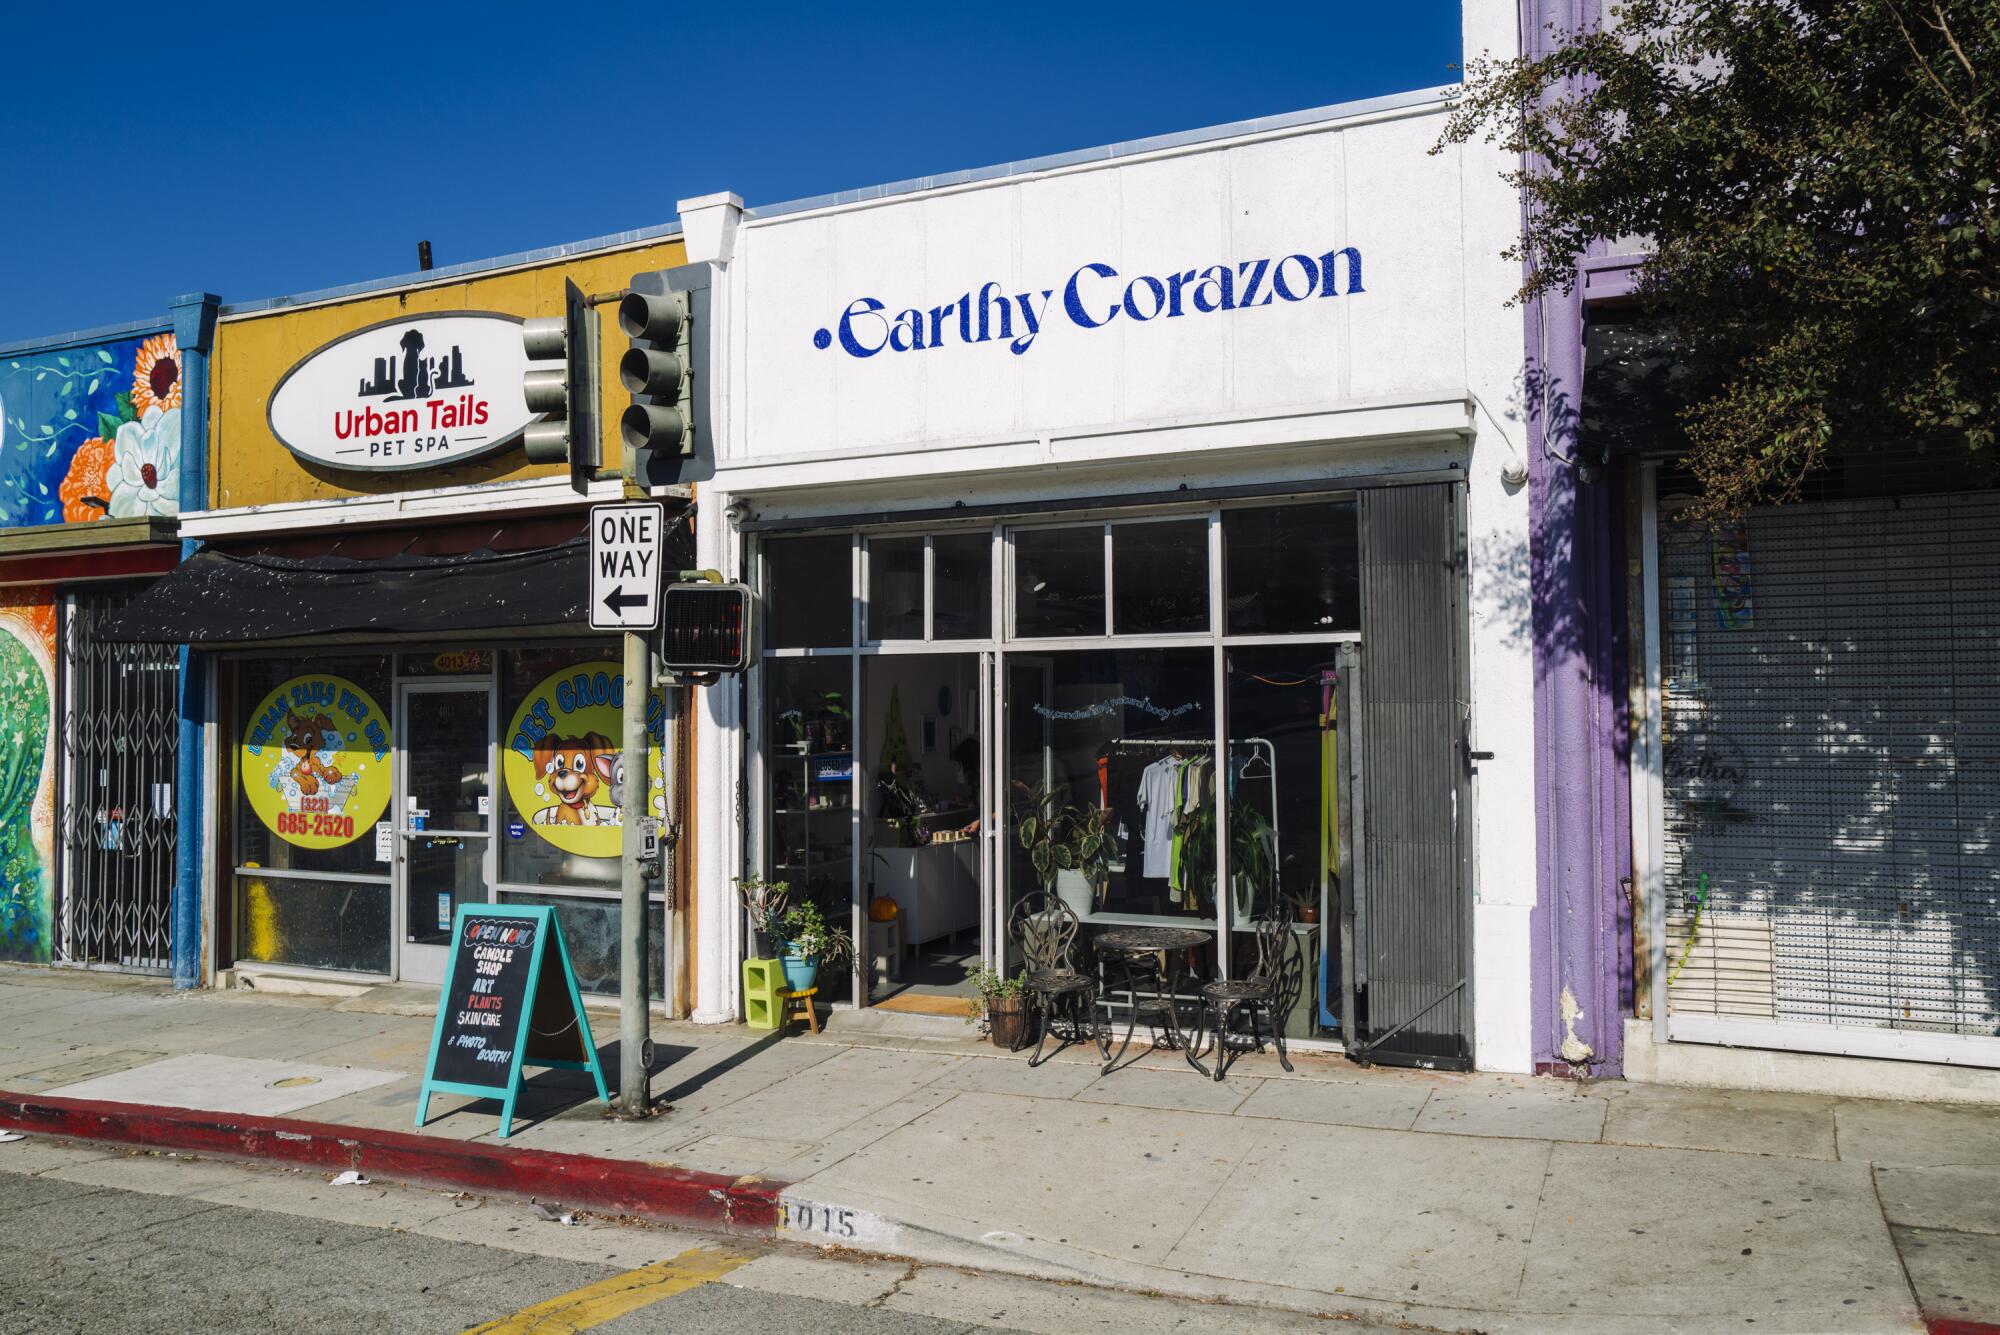 The facade of Earthy Corazon in Los Angeles